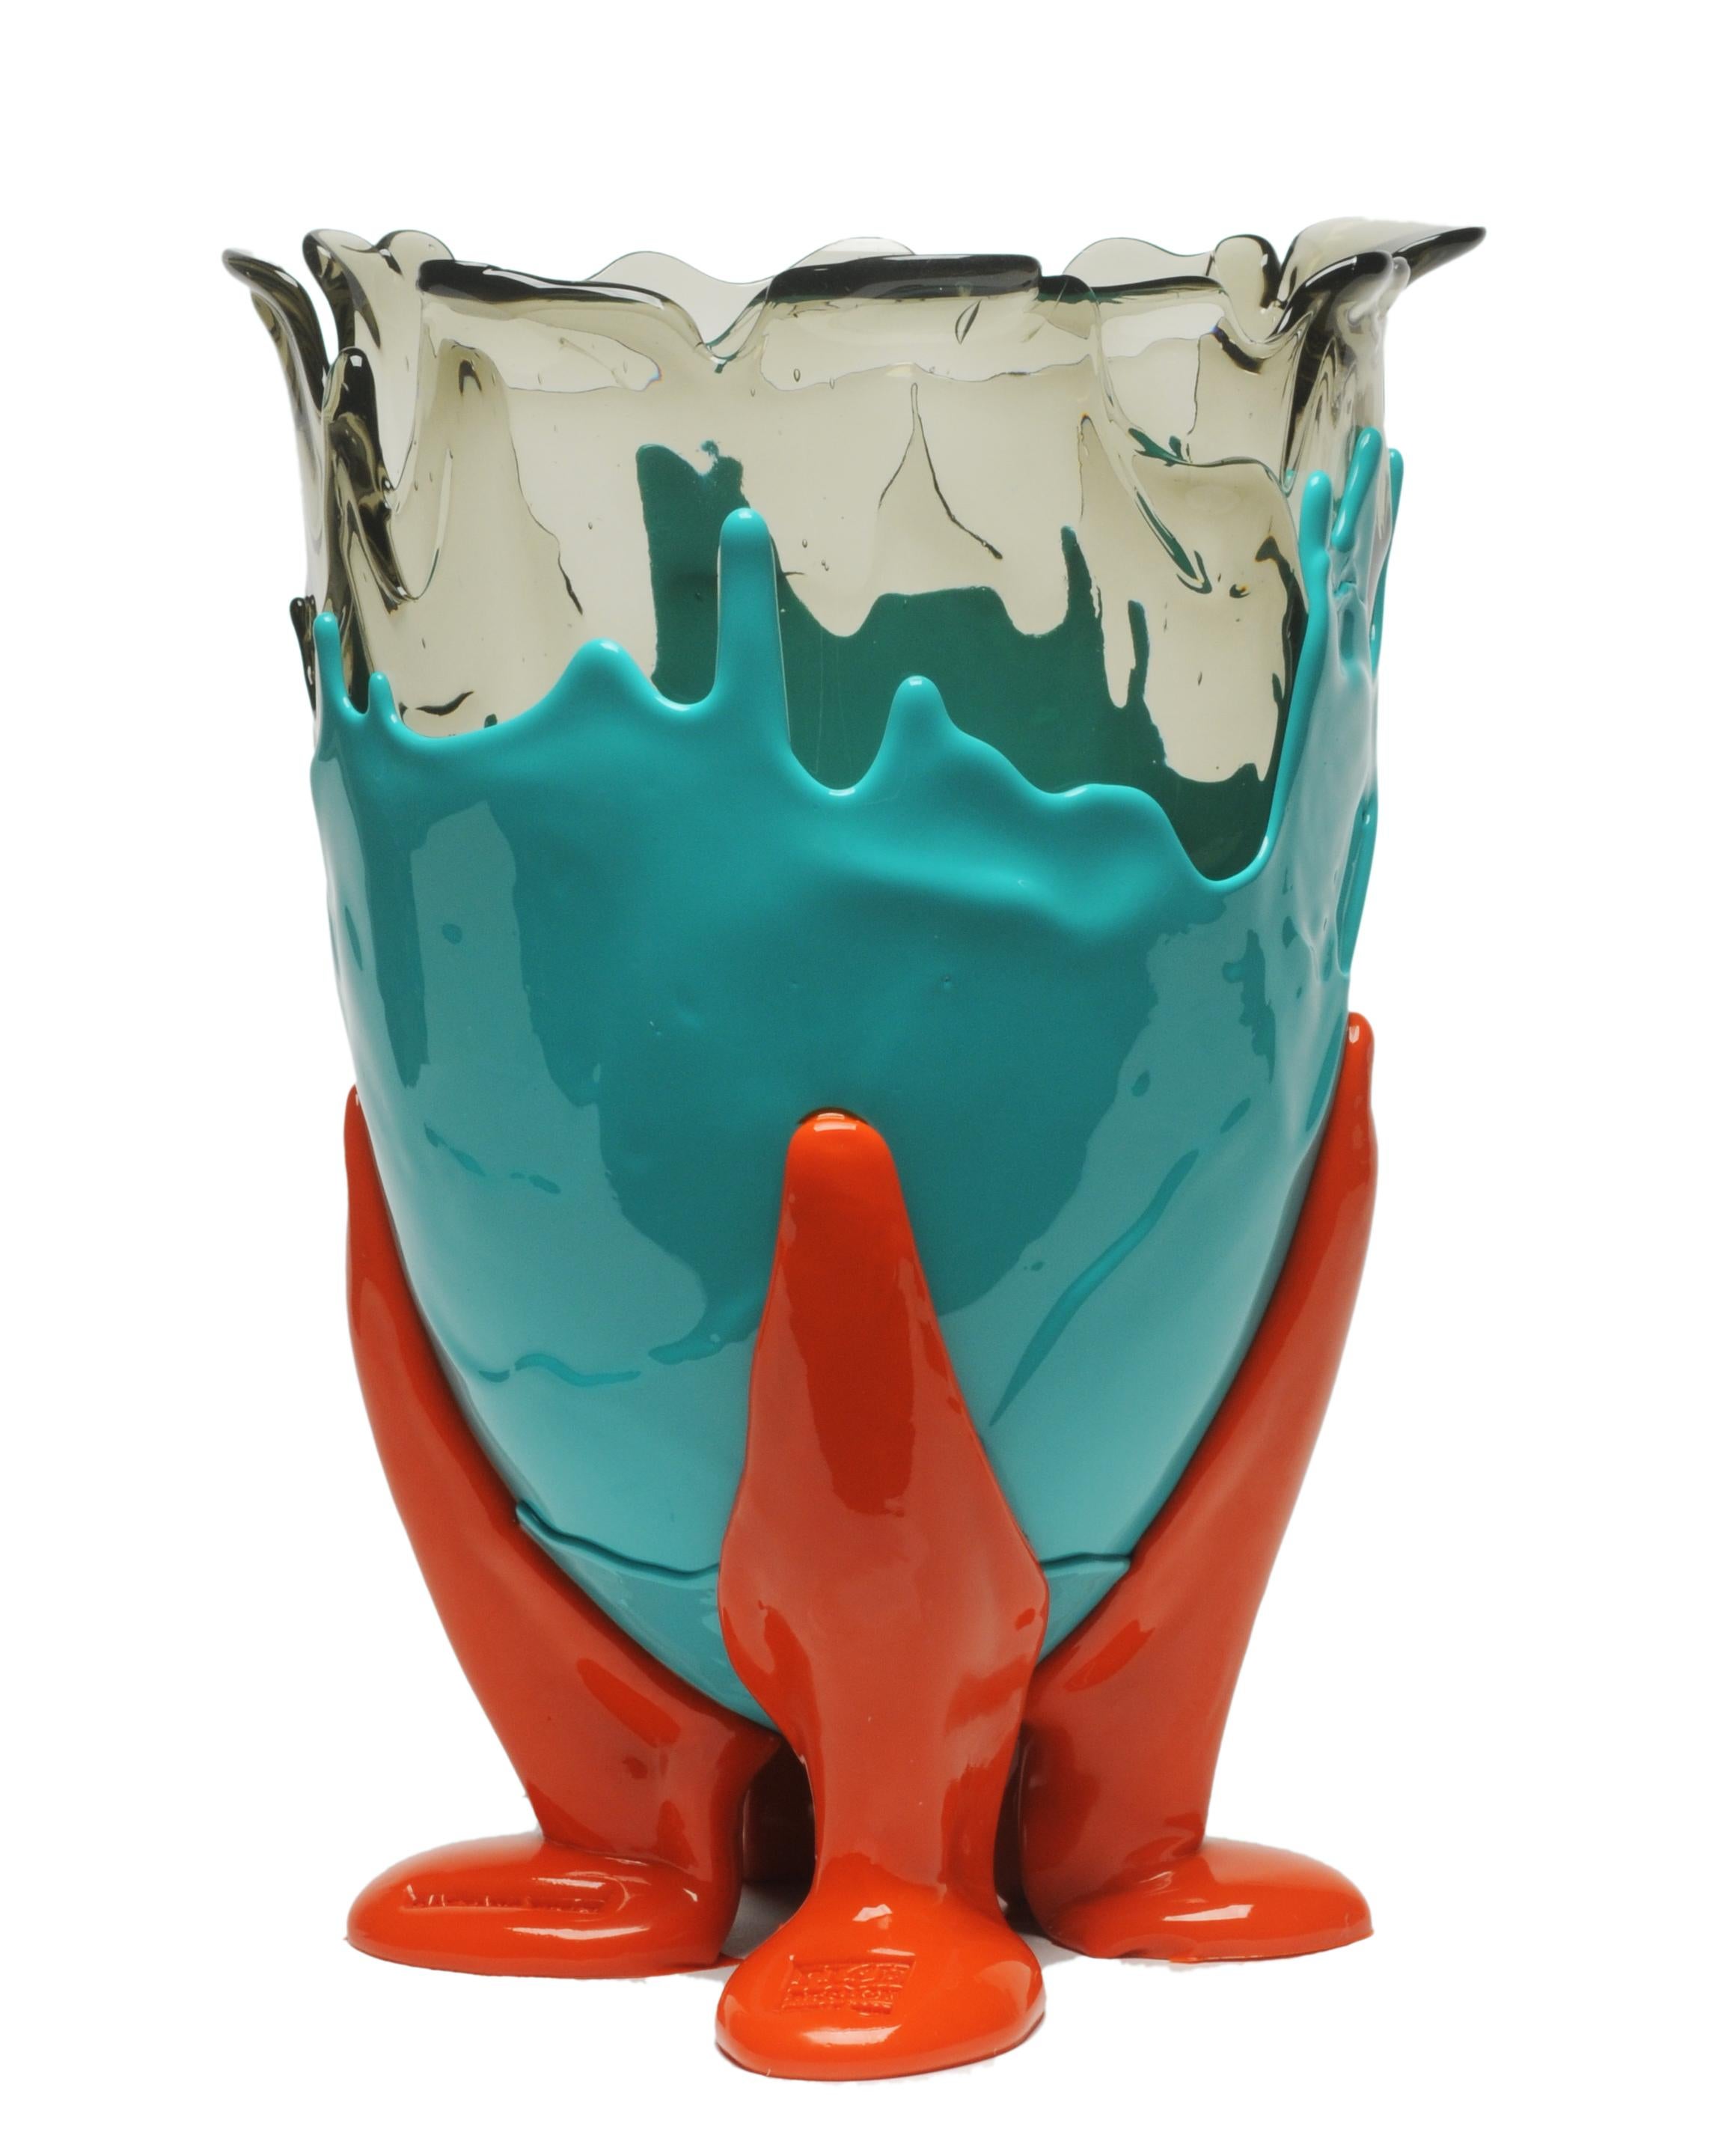 Klare Vase in Extrafarbe - klares Aqua, mattes Türkis, mattes Orange.

Vase aus weichem Harz, entworfen von Gaetano Pesce im Jahr 1995 für die Collection'S Fish Design.

Maße: M - Ø 16cm x H 26cm
Farben: klar aqua, matt türkis, matt